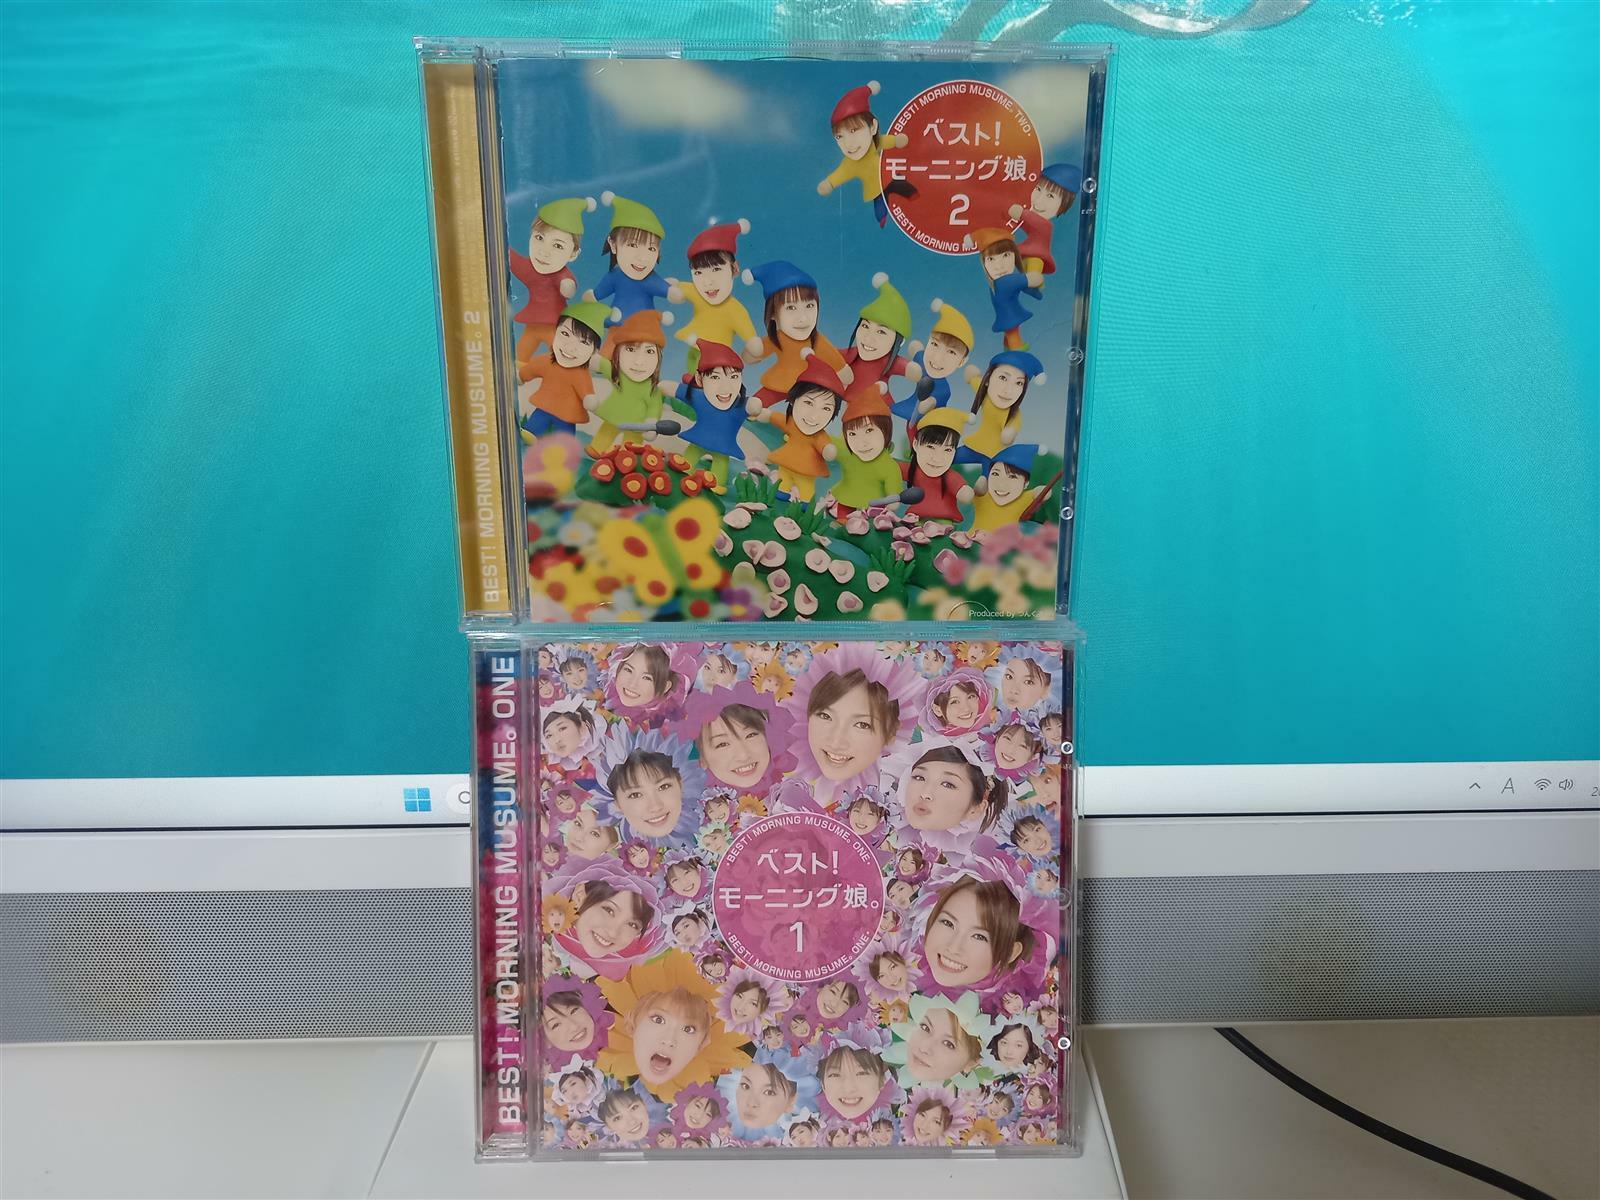 [중고] Morning Musume(모닝구무스메) ^BEST 1 & 2^ 2CD...일본반...Sony Music반...